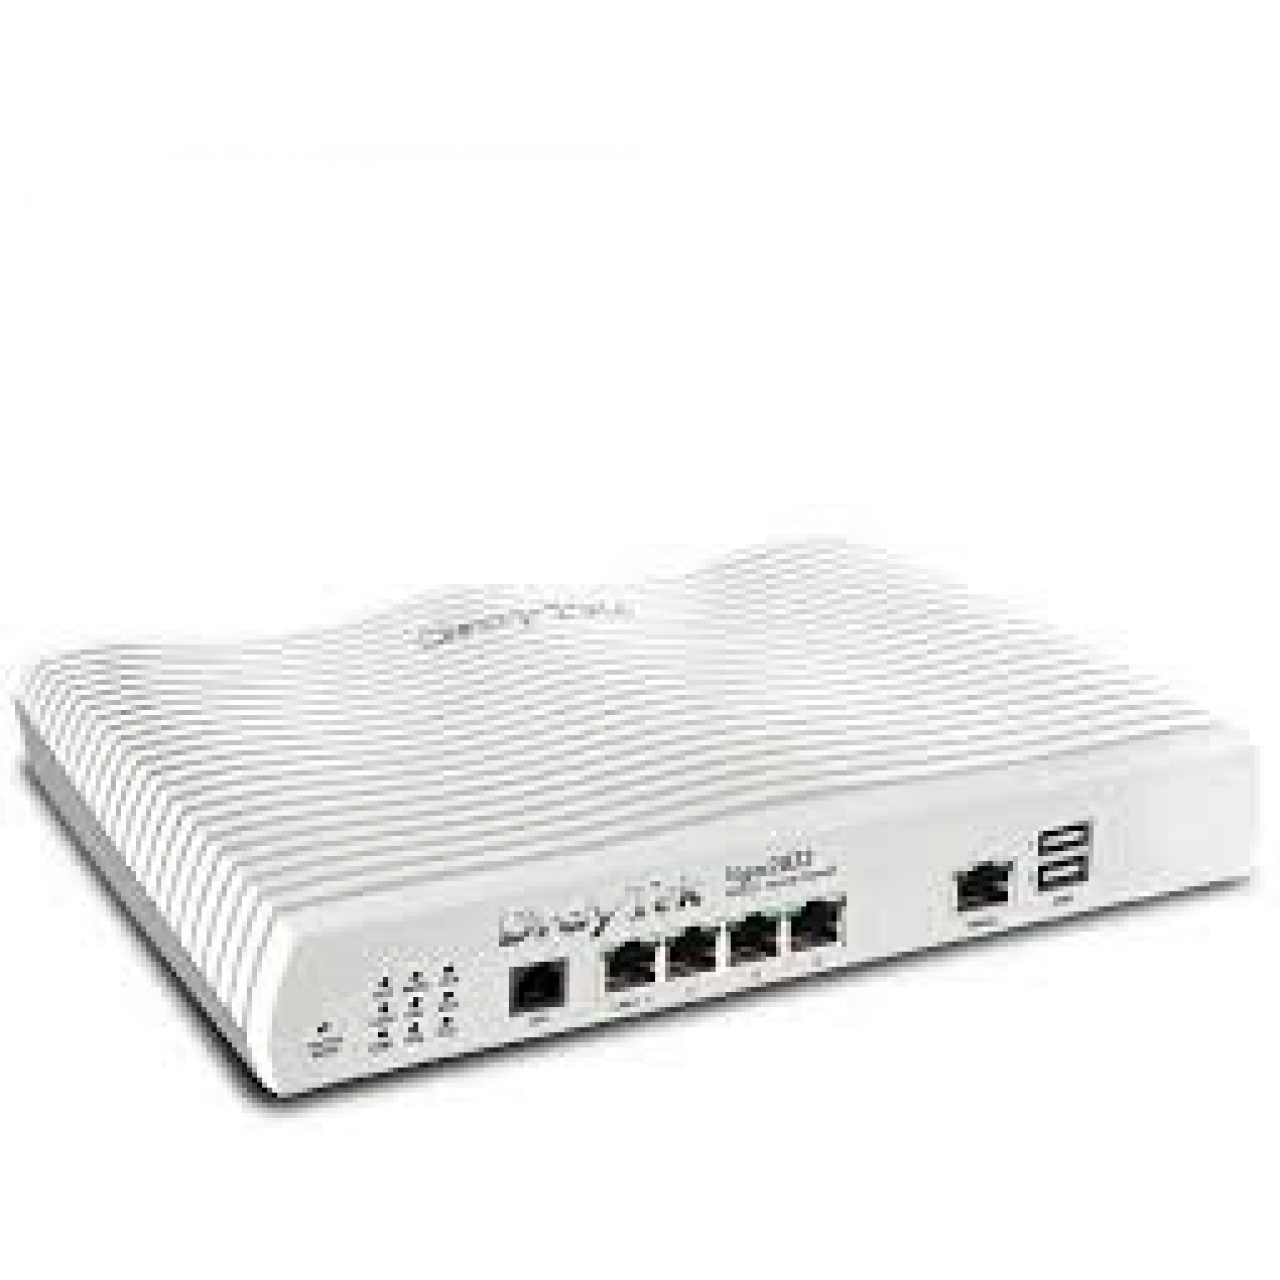 DRAYTEK Vigor 2710Vn ADSL2+ VoIP VPN Wireless Router Modem (2S1L)